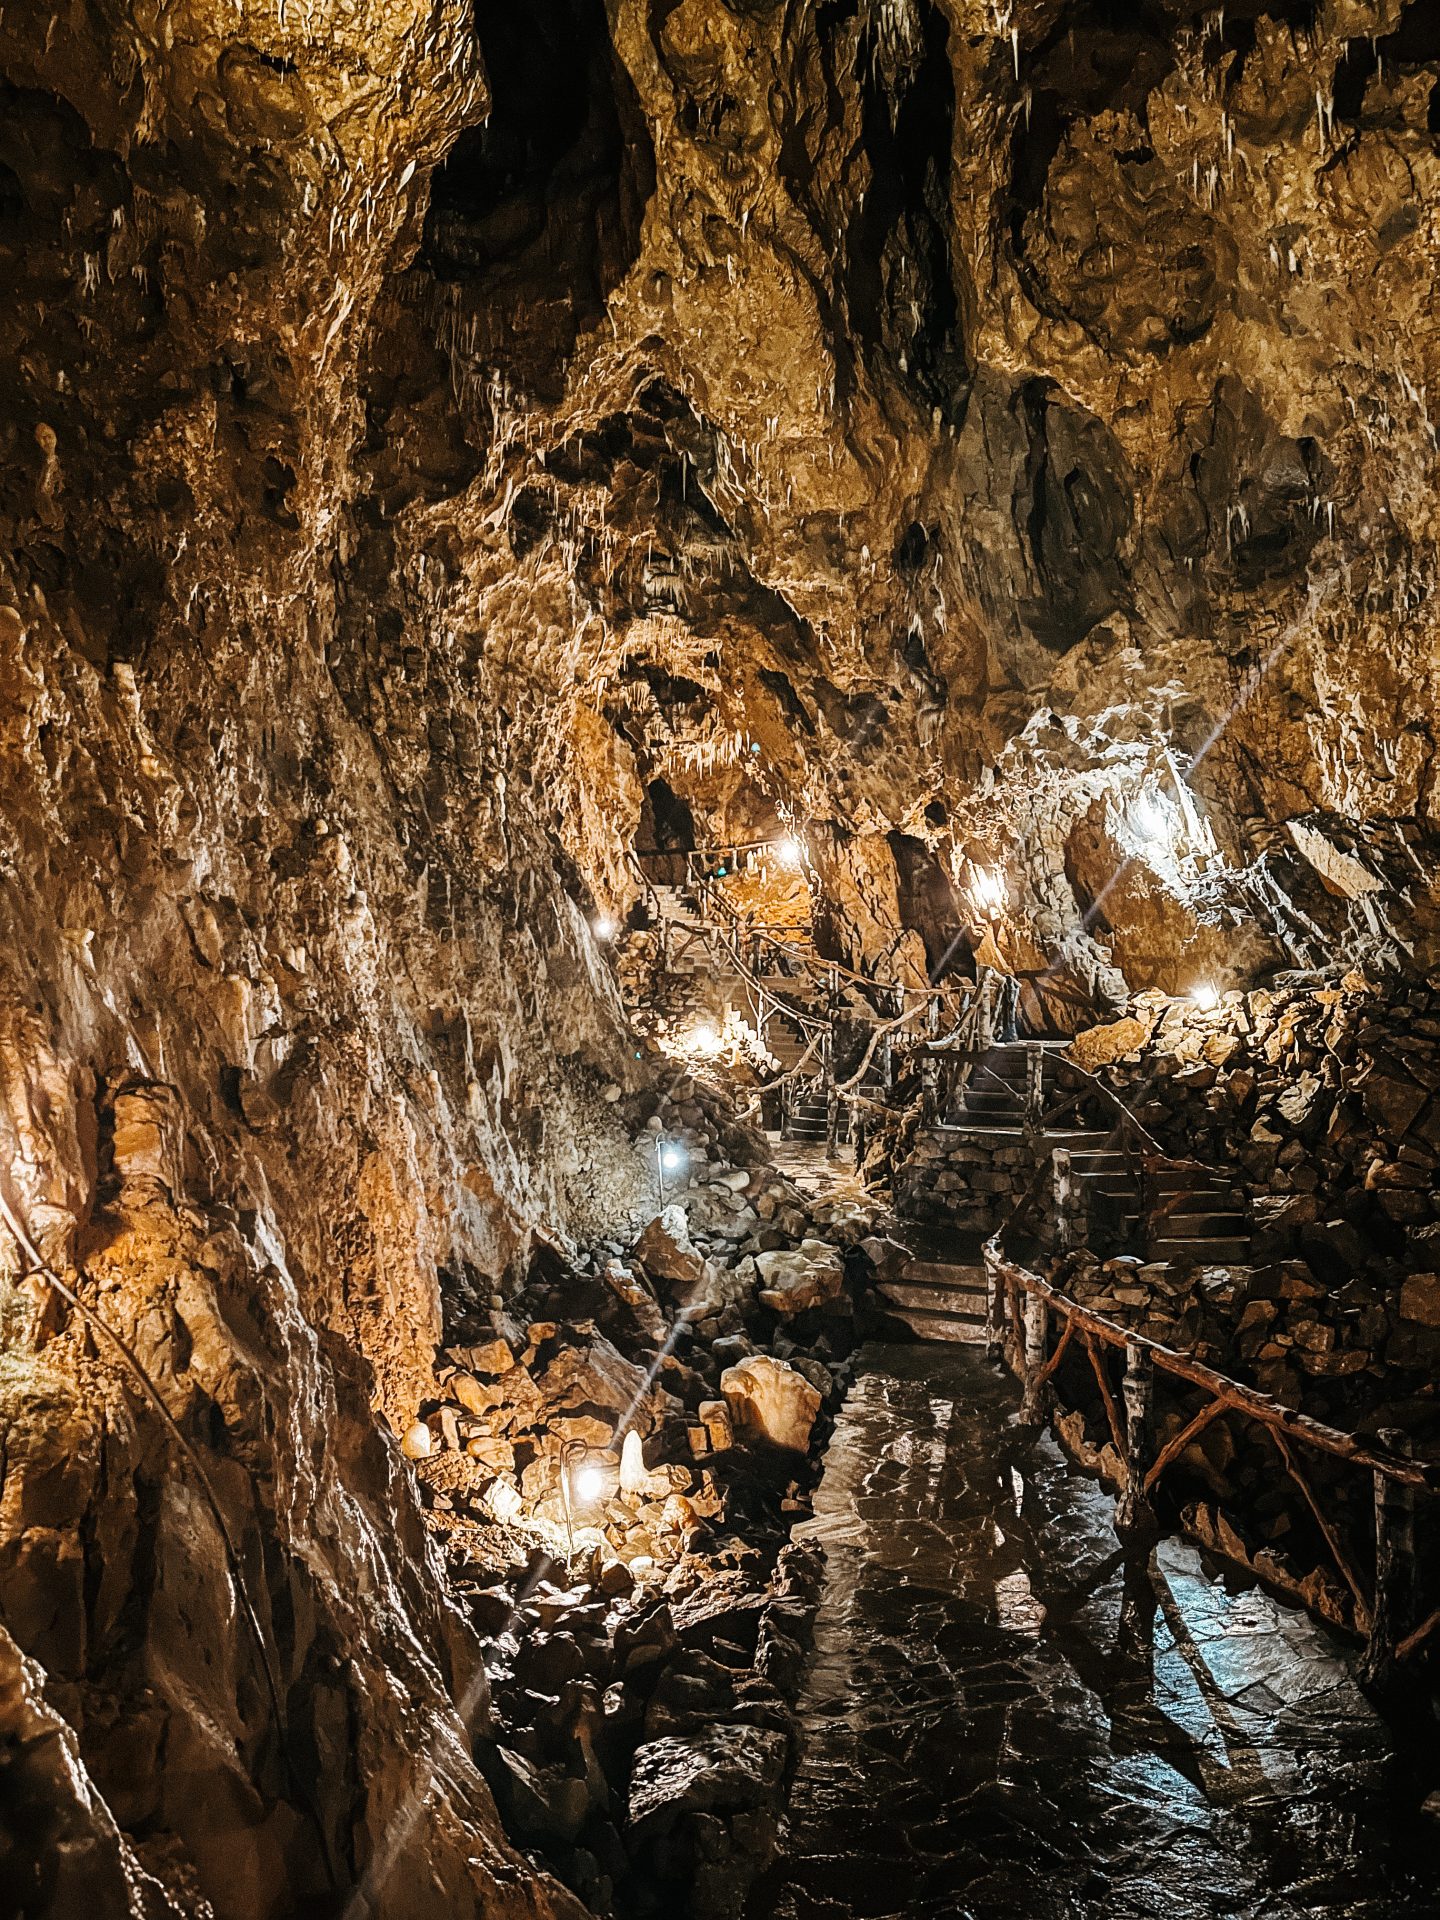 Grotte de Dinant La Merveilleuse